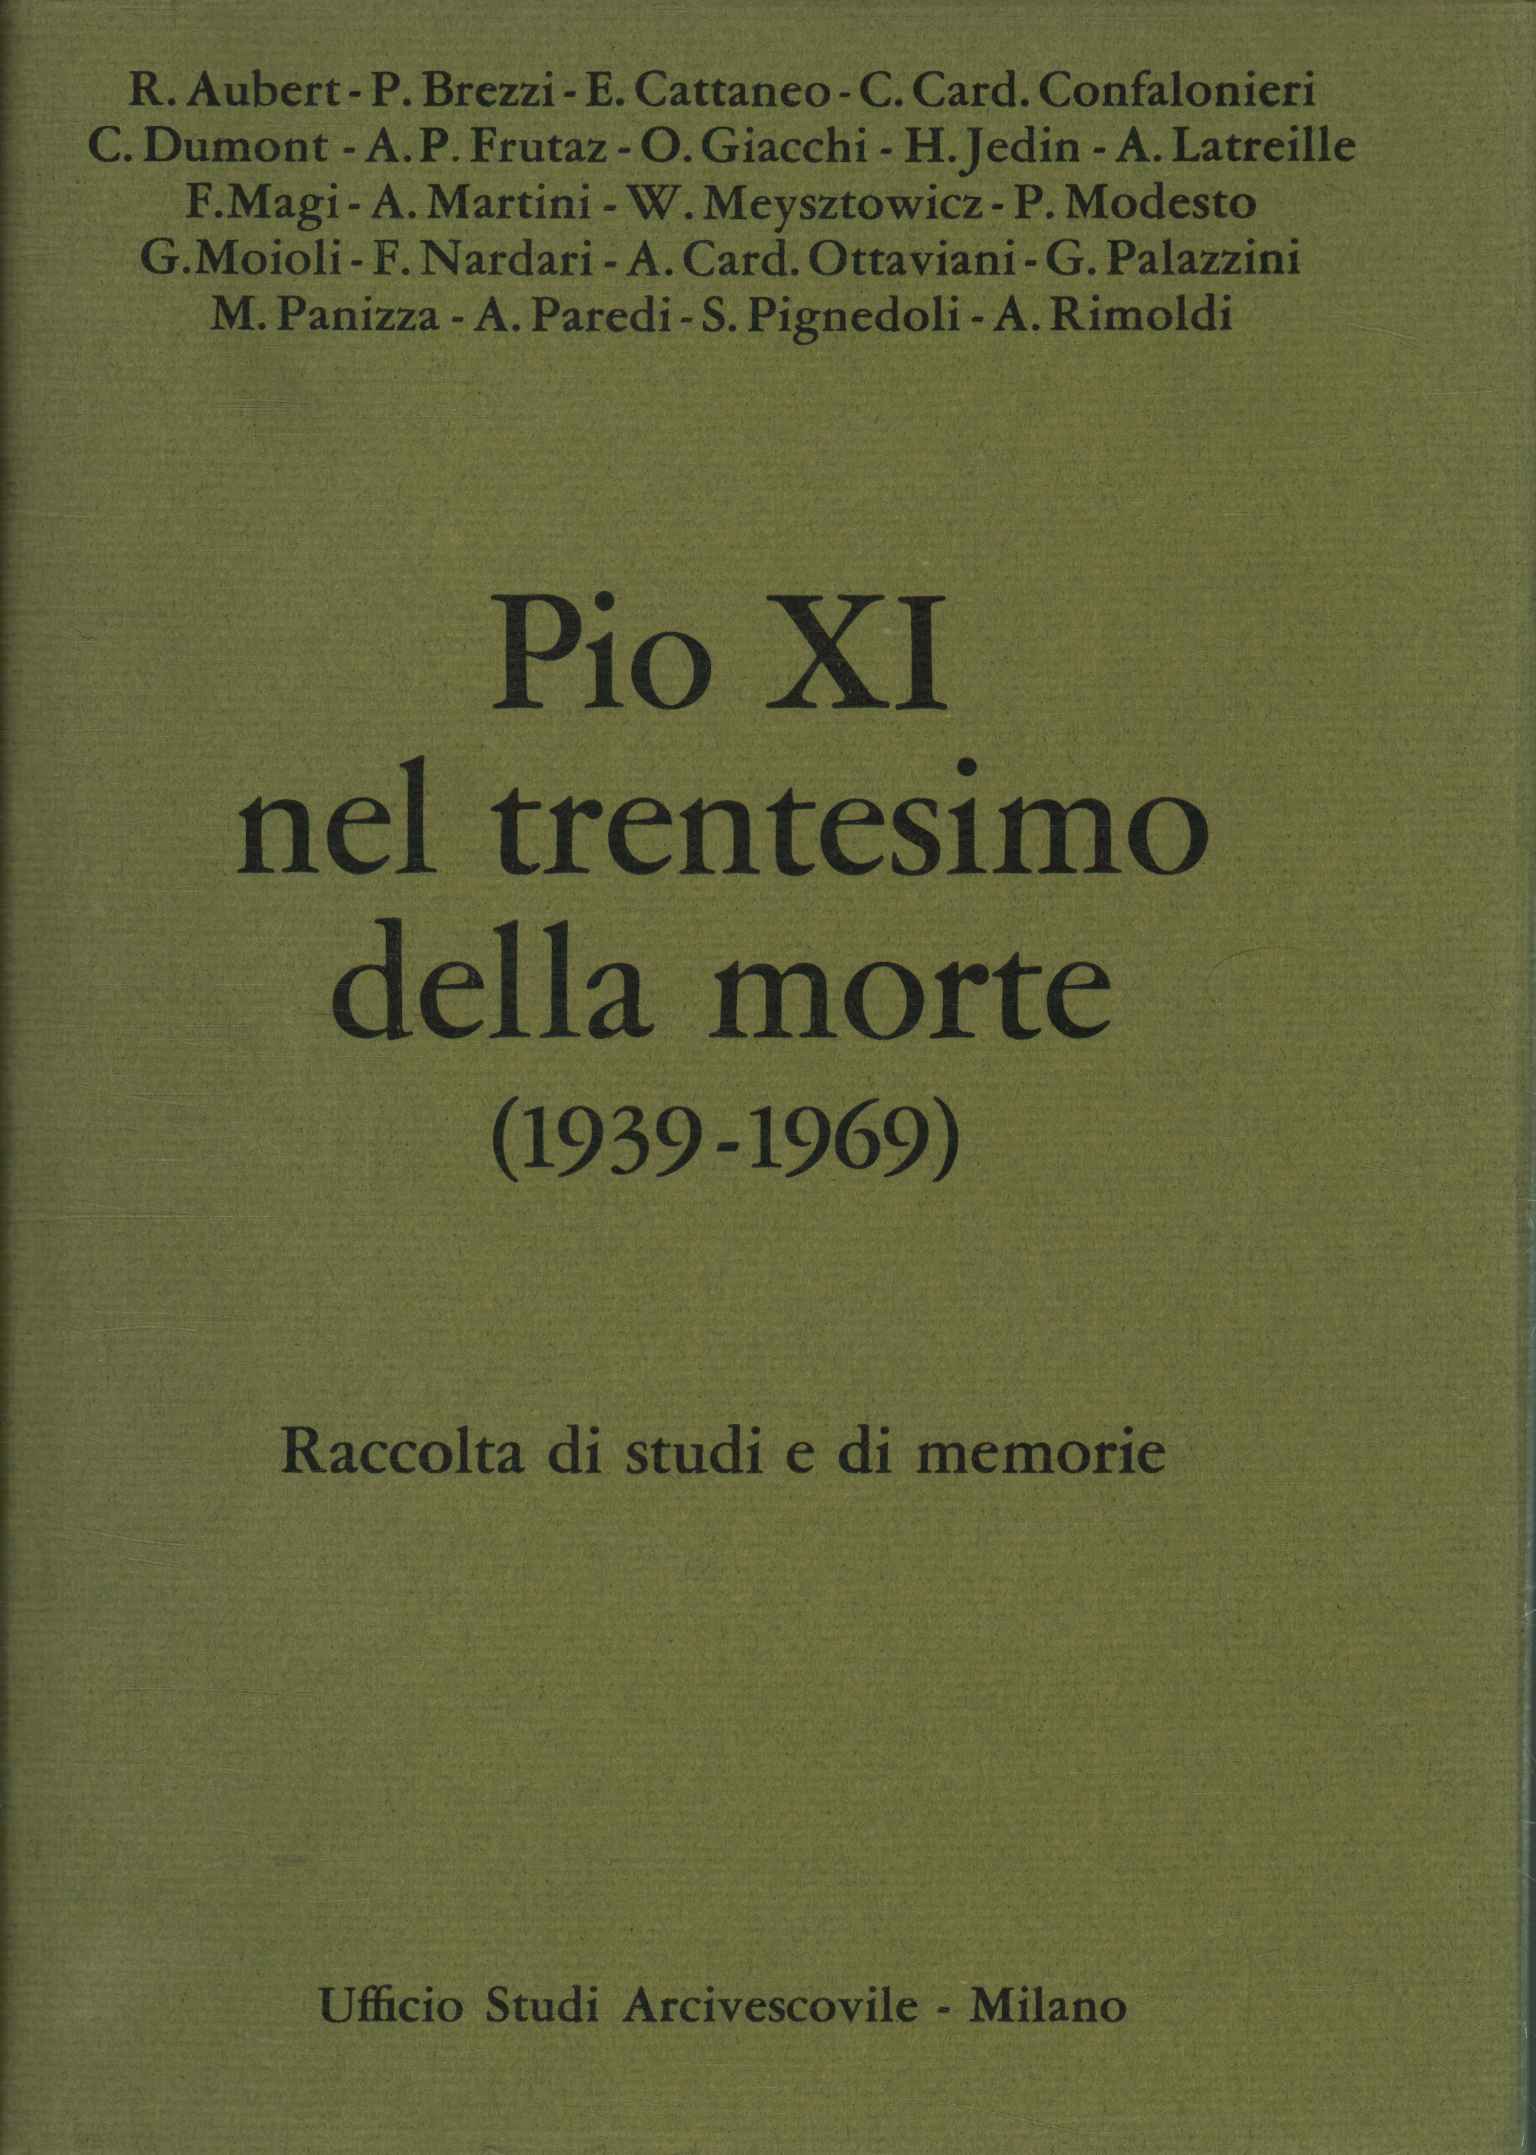 Pie XI à l'occasion du trentième anniversaire de sa mort (193